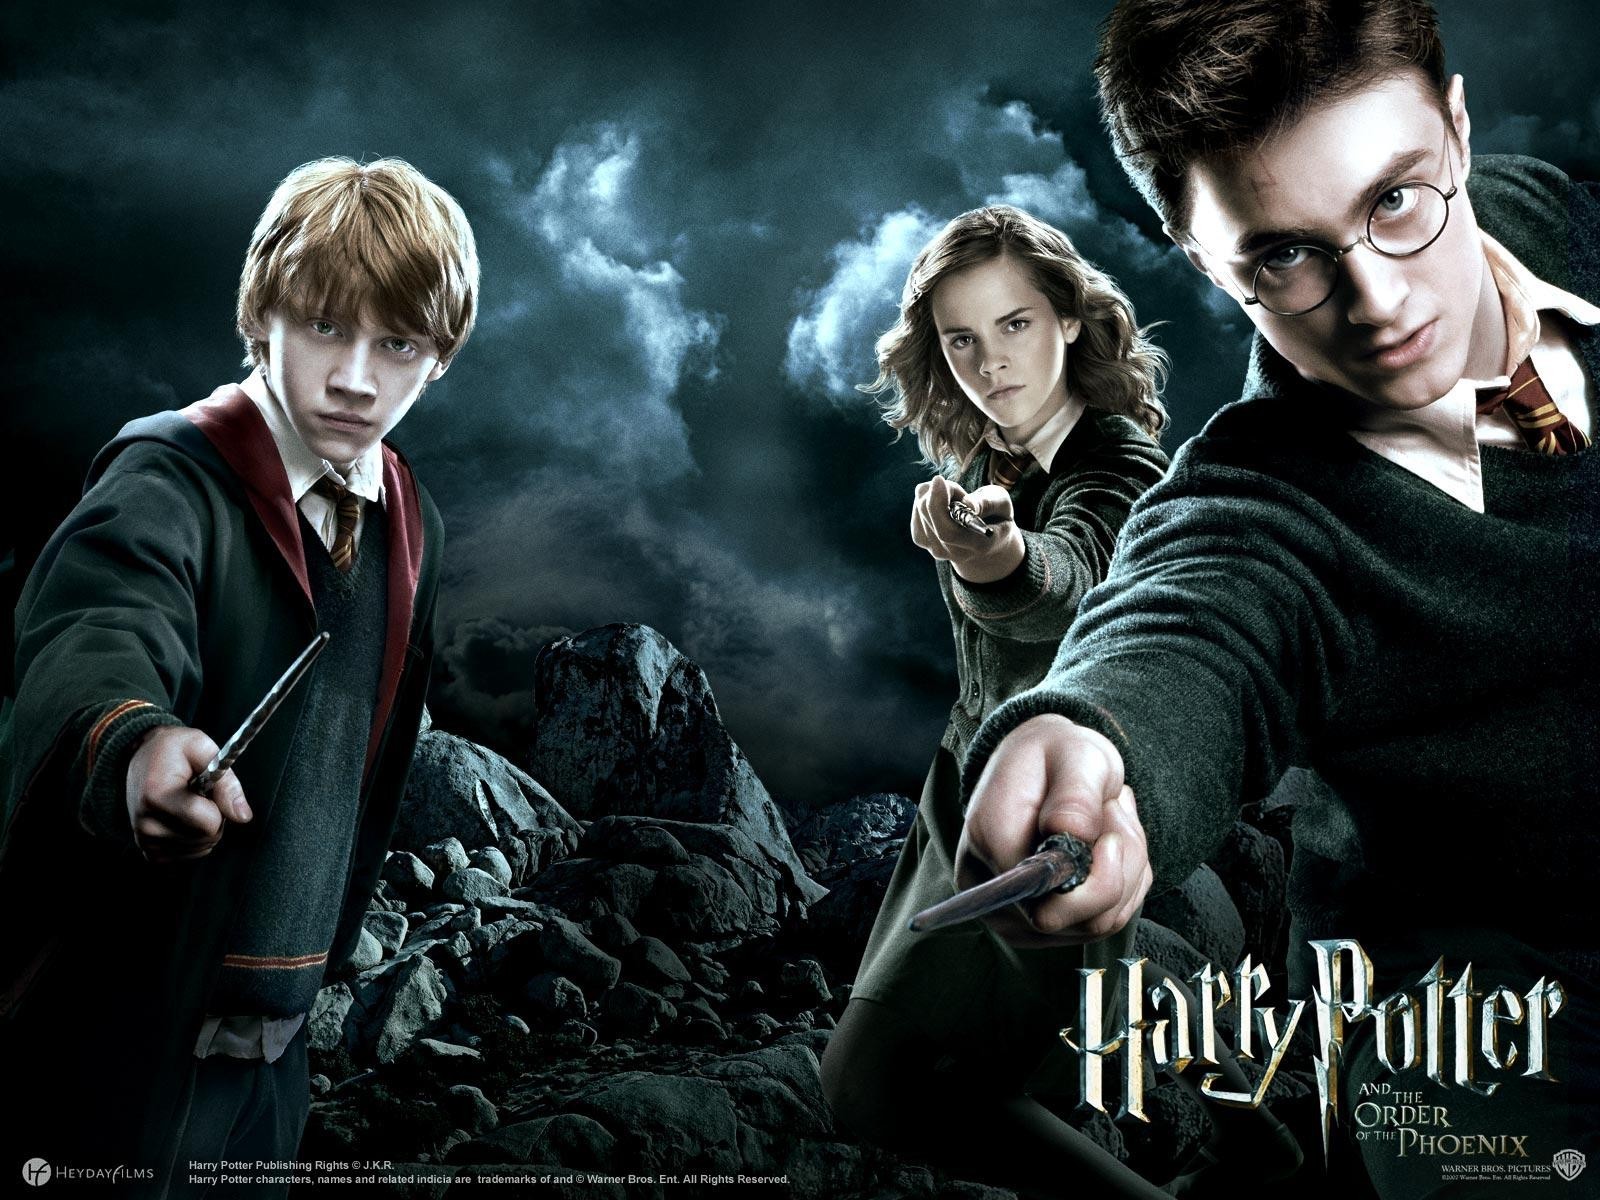 http://4.bp.blogspot.com/-YFIJx6WYEsc/TiZqm0wZTWI/AAAAAAAABos/tHmPB9irAe8/s1600/Harry+Potter.jpg